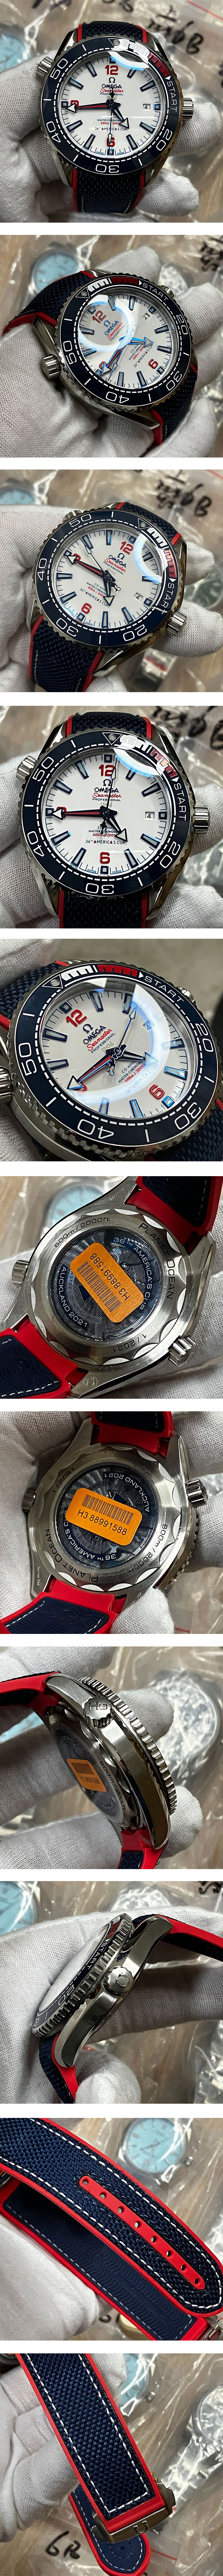 レプリカ時計: オメガコピー215.32.43.21.04.001 シーマスター プラネットオーシャンアメリカズカップ 